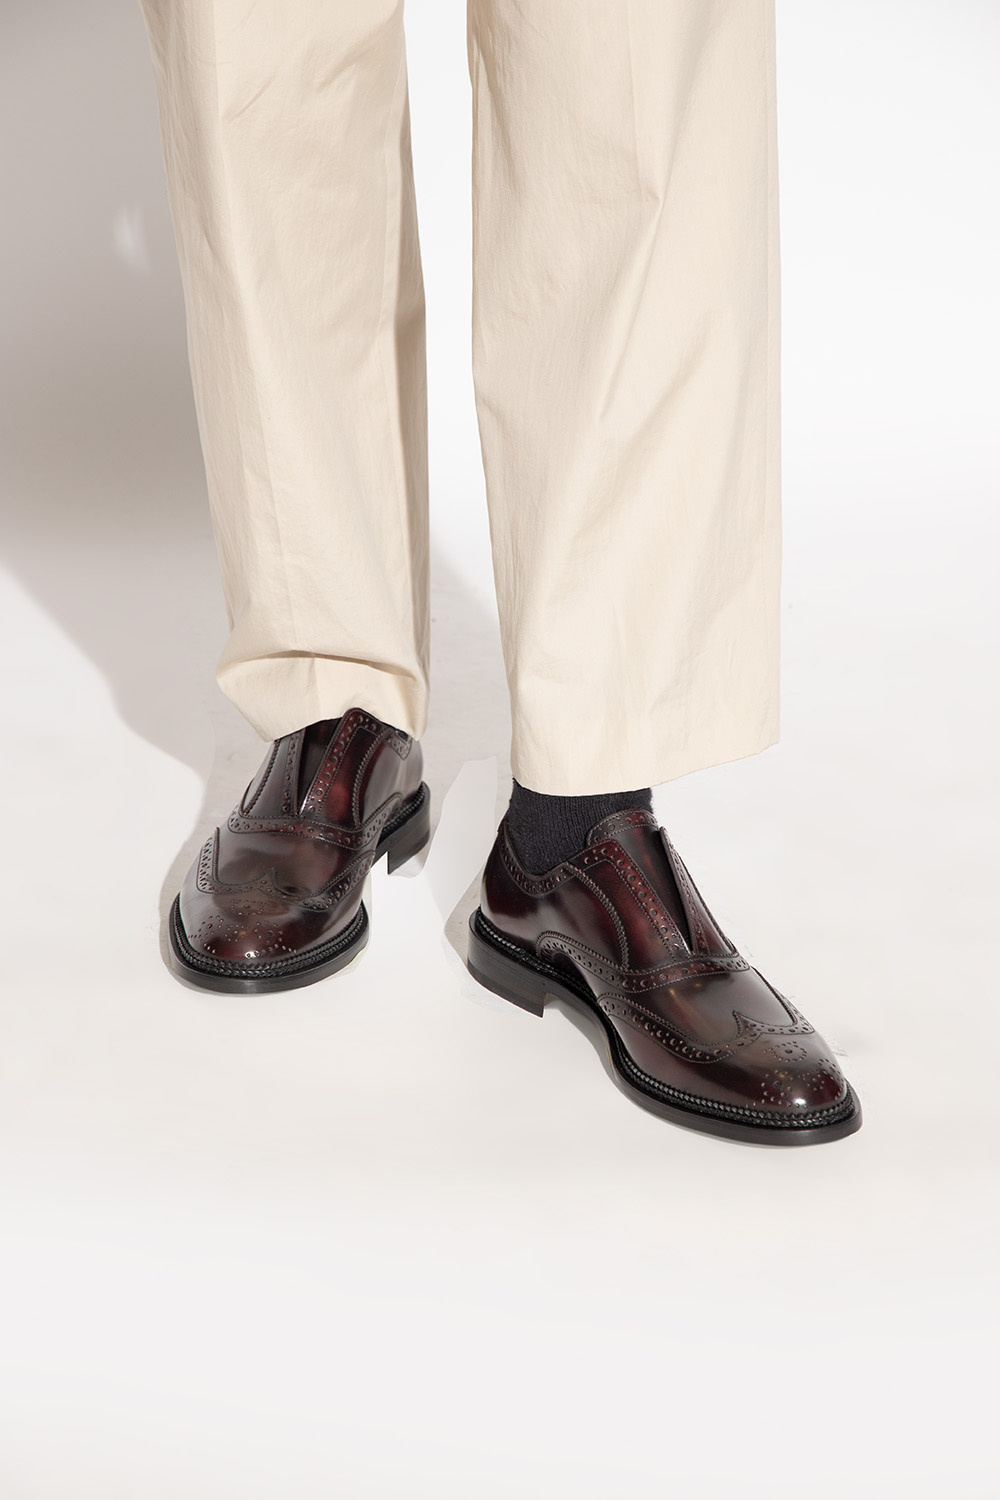 FERRAGAMO ‘Gaudino’ leather shoes